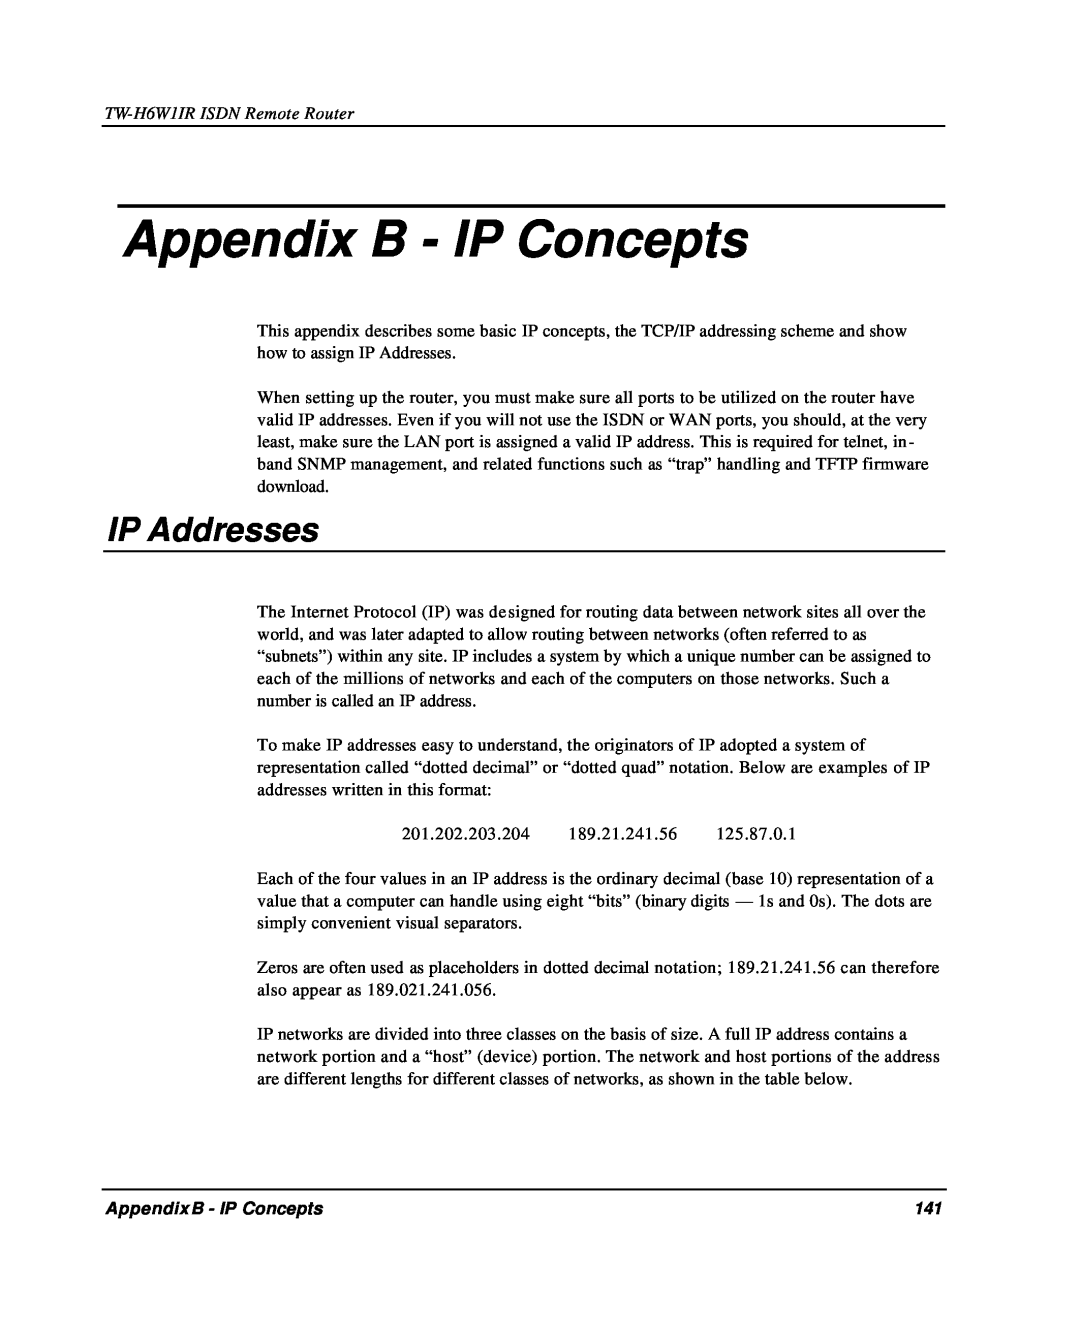 TRENDnet TW-H6W1IR manual Appendix B - IP Concepts, IP Addresses 